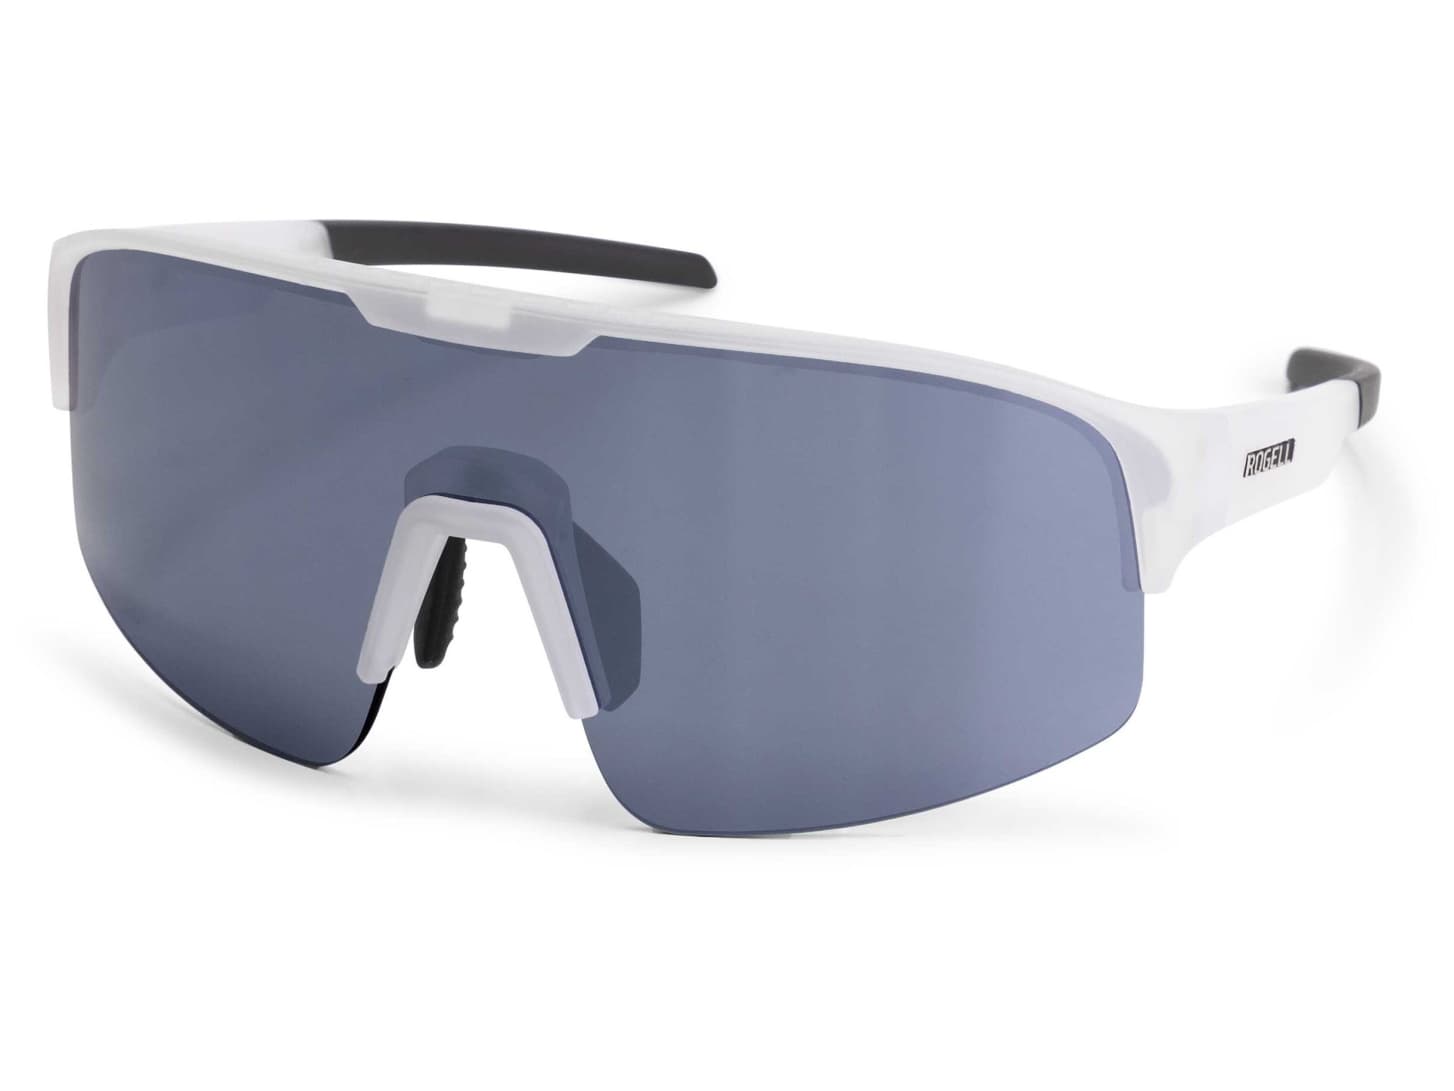 Středně tmavé sluneční sportovní brýle Rogelli MIRAGE + neoprénové pouzdro, bílé